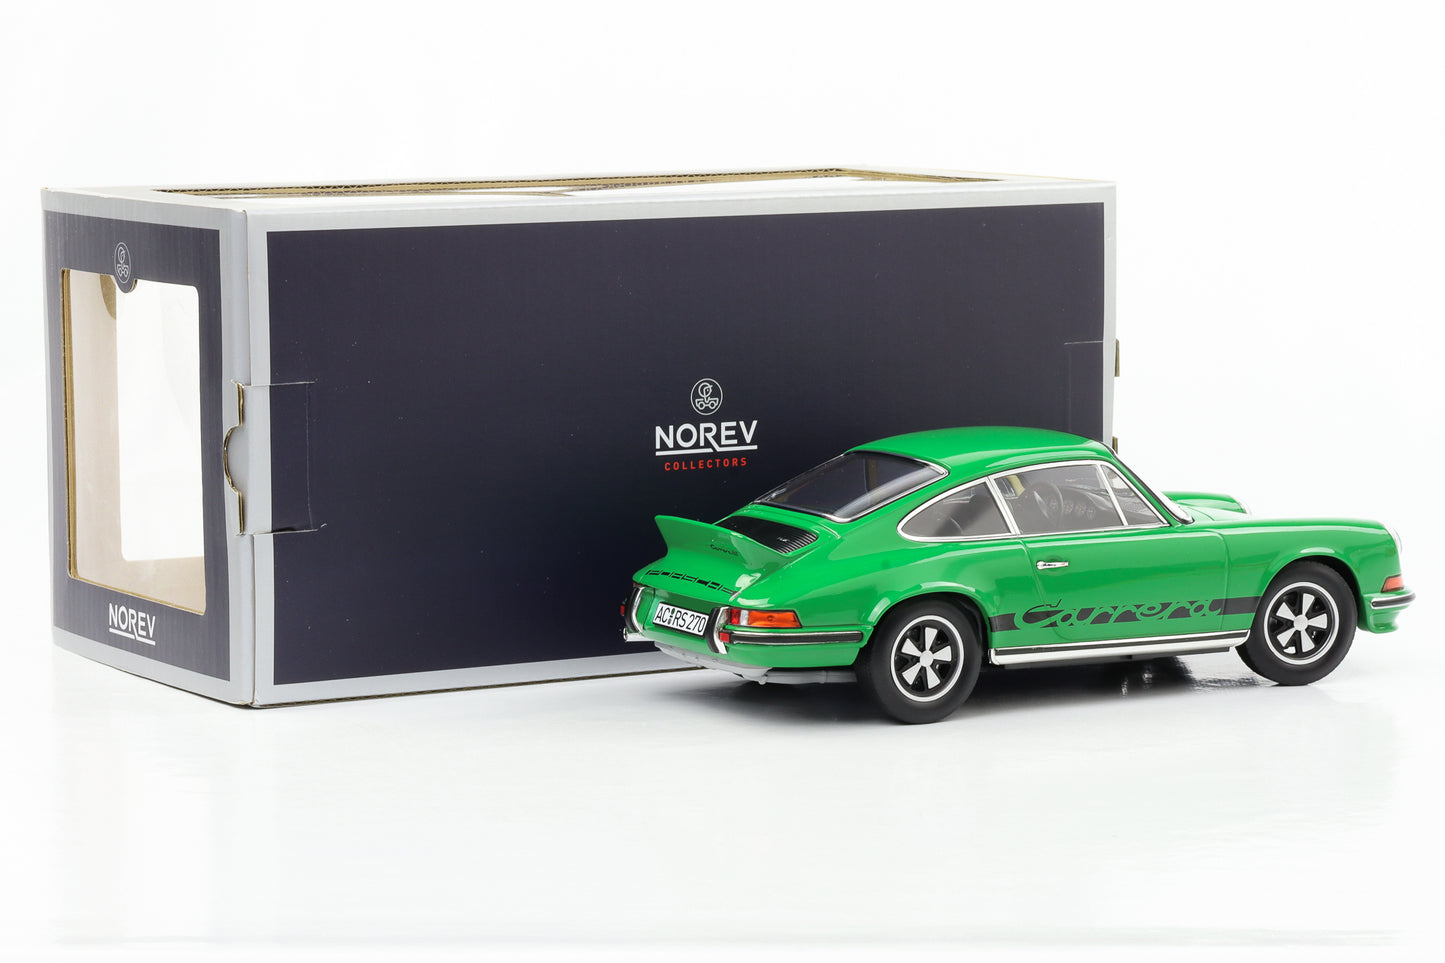 1:18 Porsche 911 RS Touring Carrera 1973 verde con decoración negra Norev